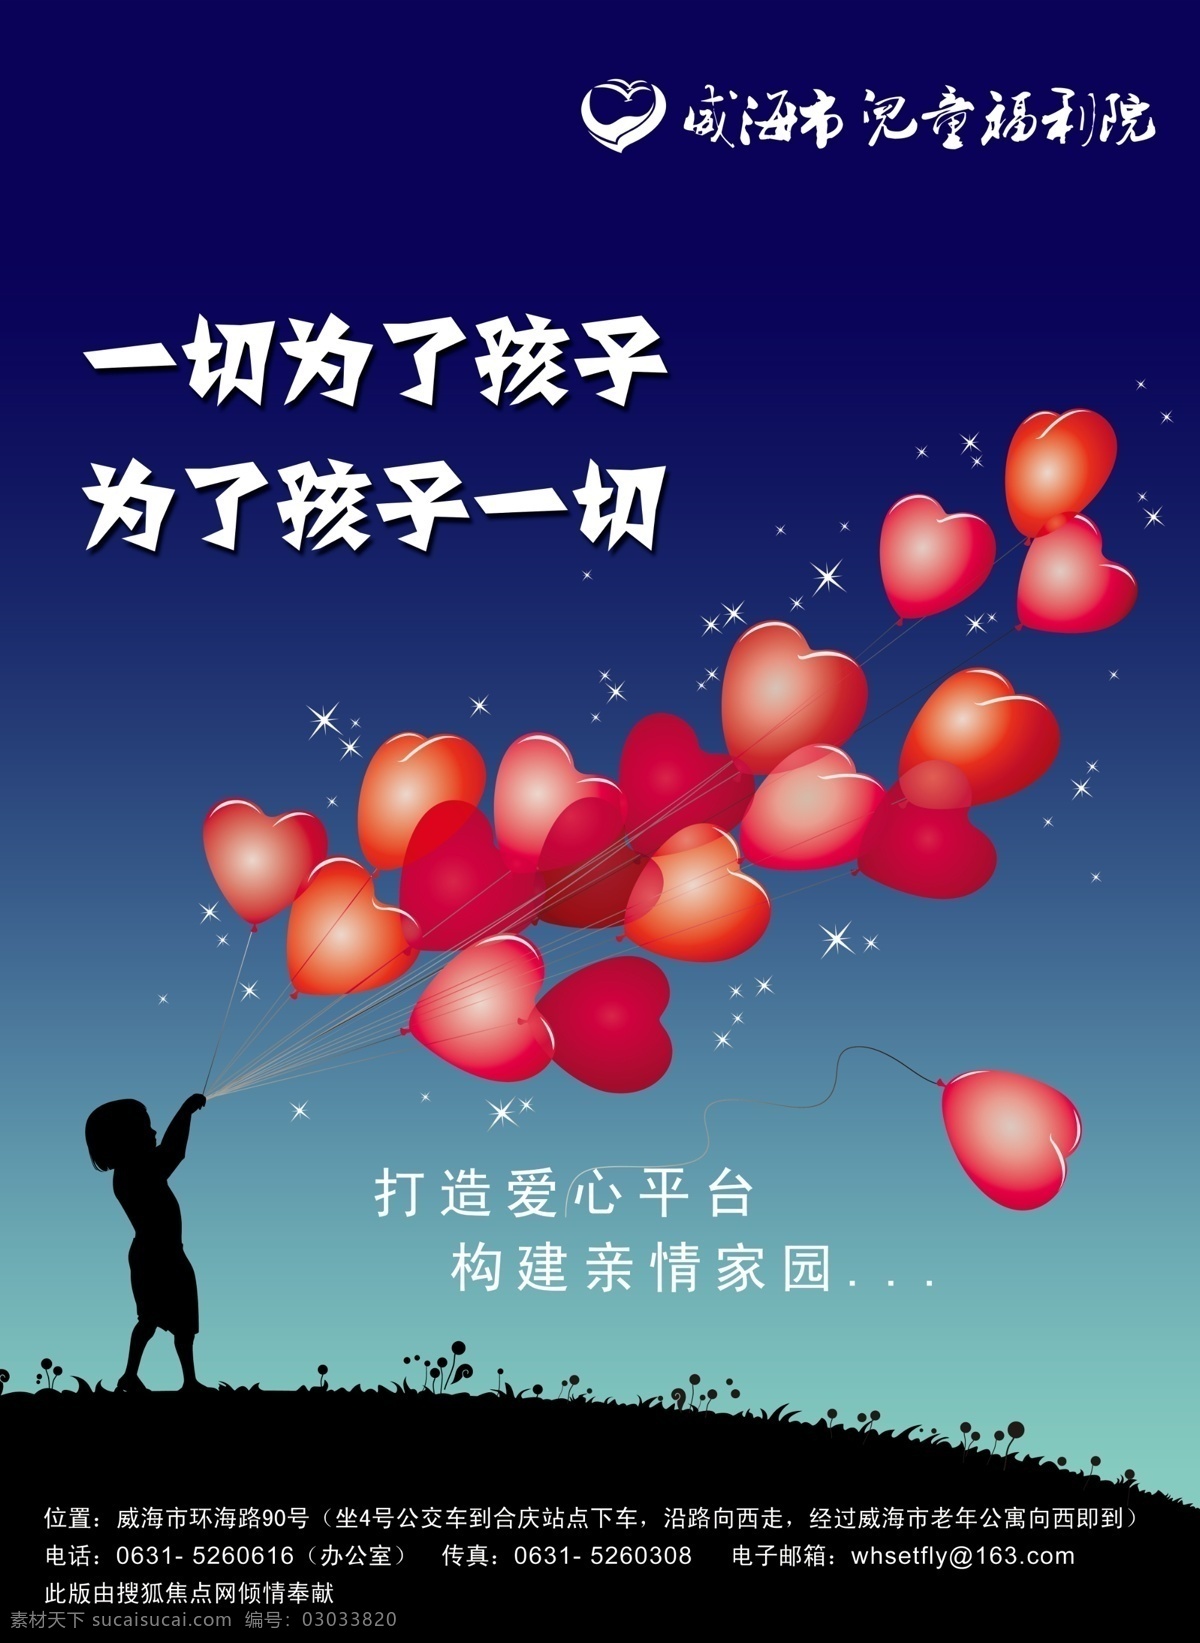 儿童福利院 海报 广告 印刷品 福利 孩子 希望 未来 亲情 家园 打造 爱心 气球 心型 剪影 夜晚 广告设计模板 源文件